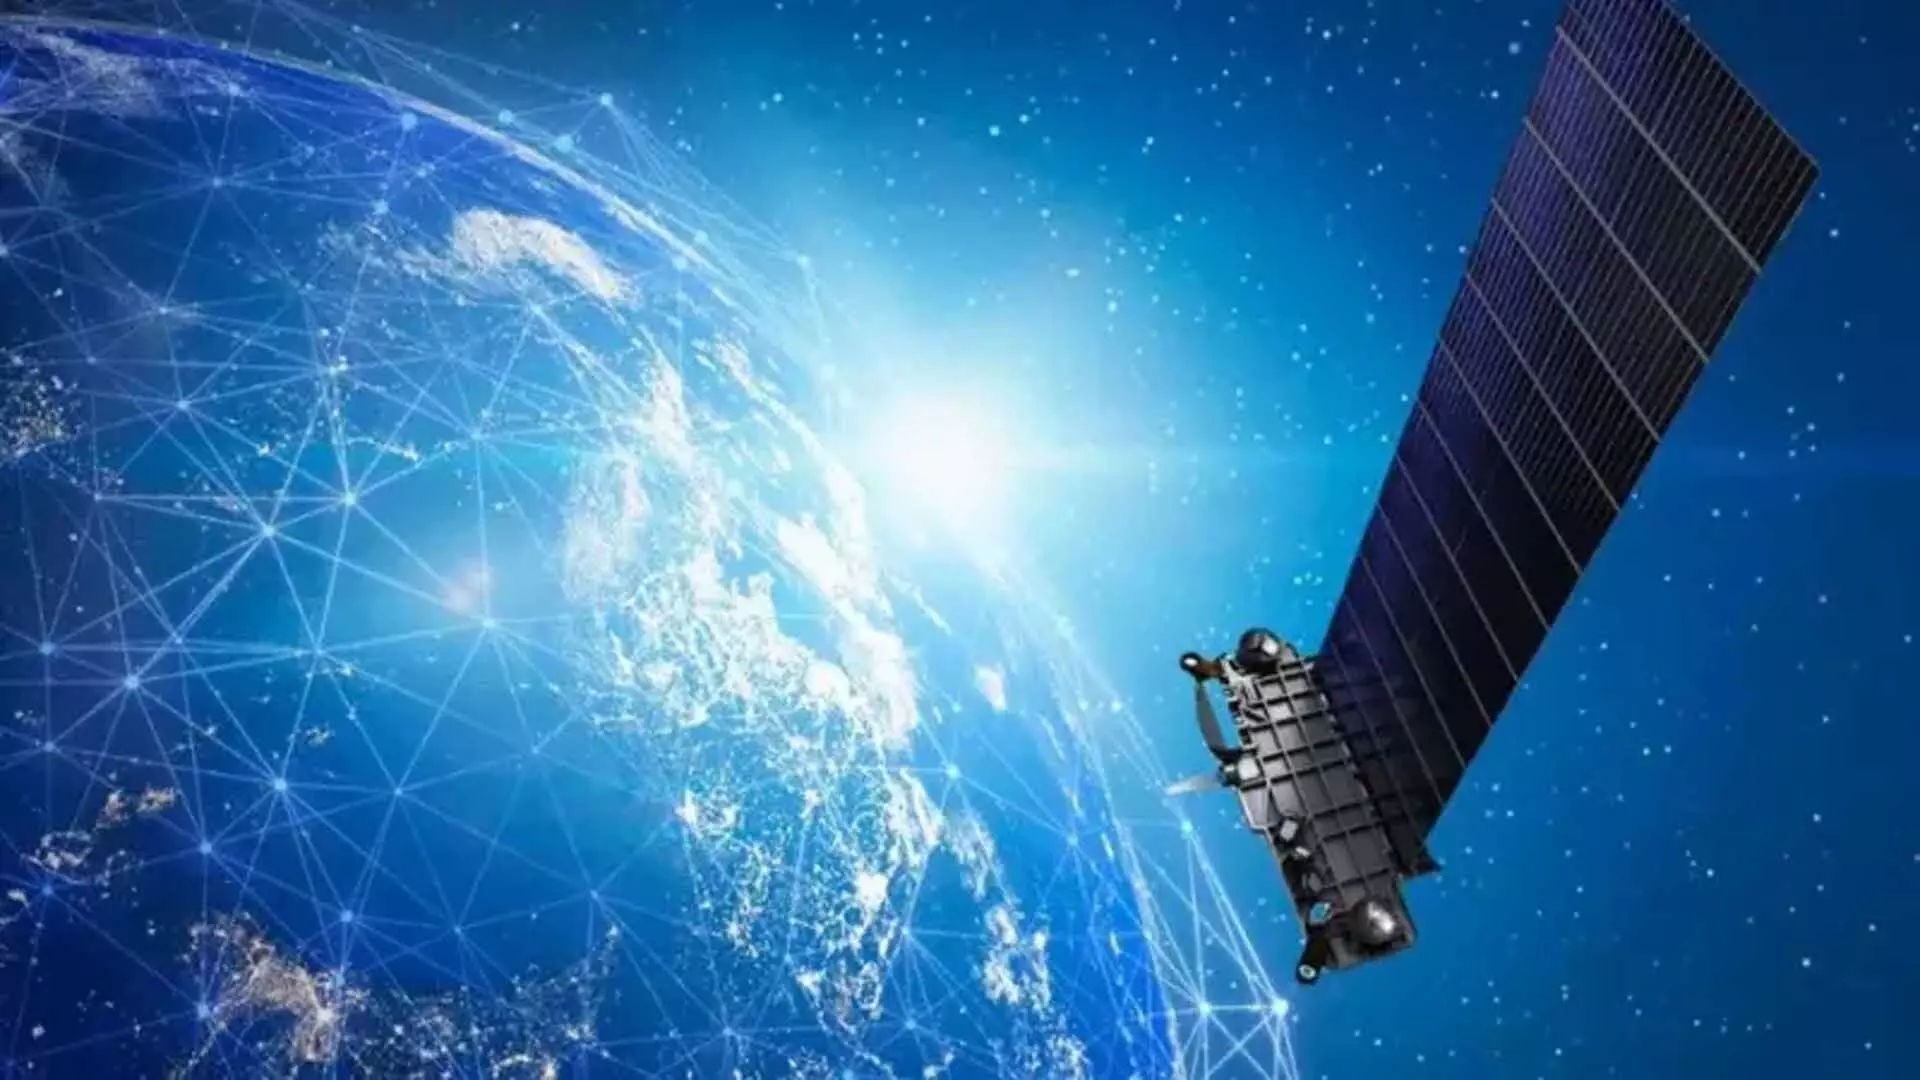 China ने स्टारलिंक को टक्कर देने वाले तारामंडल के पहले सैटेलाइट को लॉन्च किया